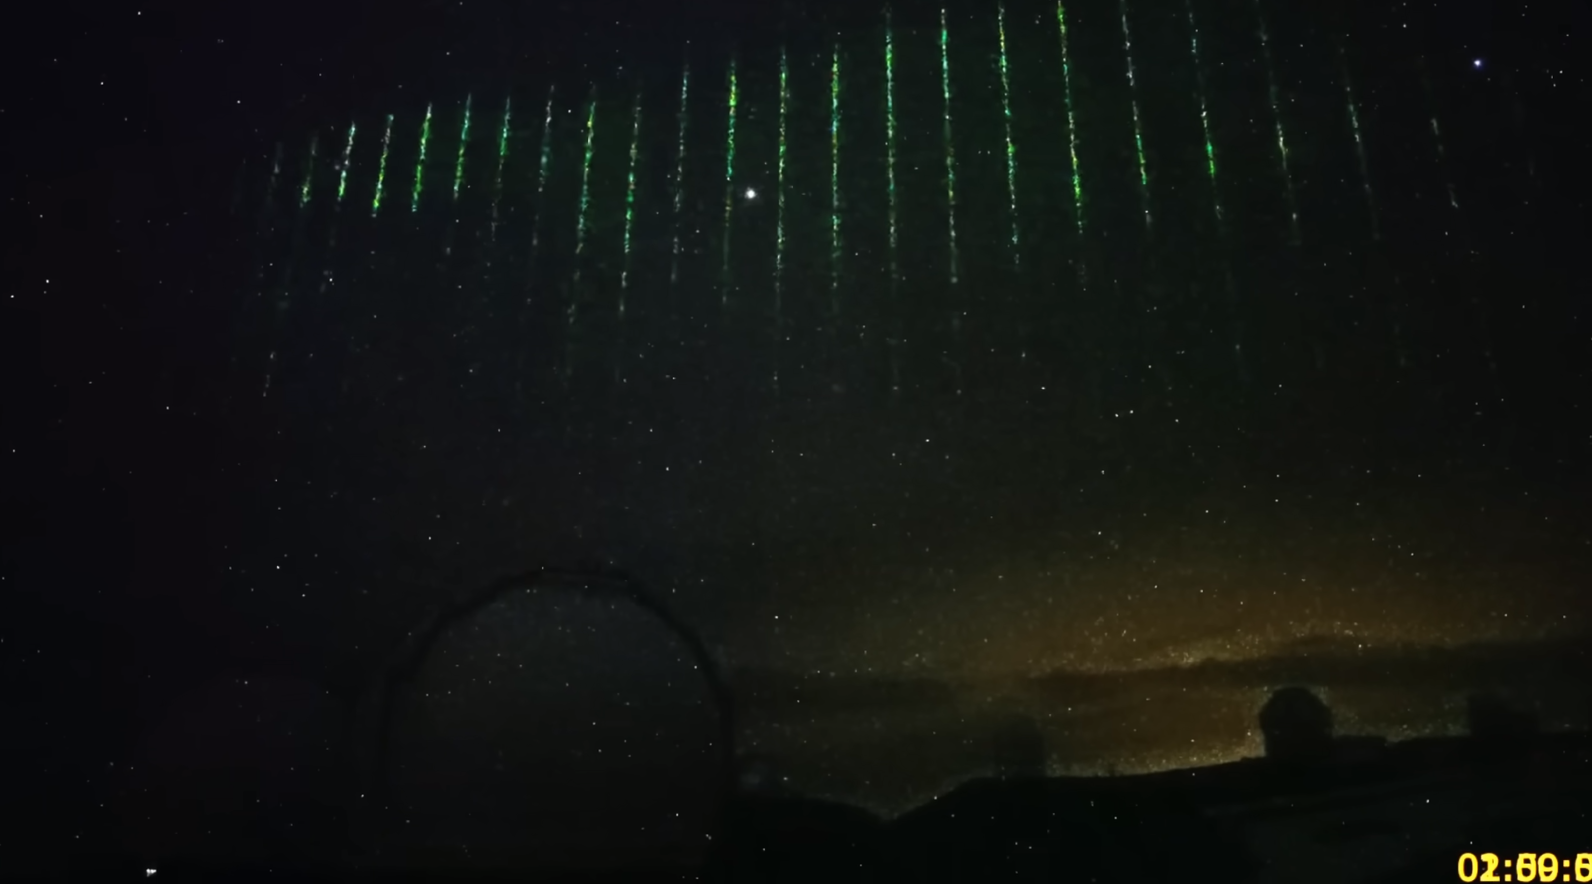 VIDEO: misteriosos rayos láser procedentes del espacio iluminan el cielo nocturno de Hawái